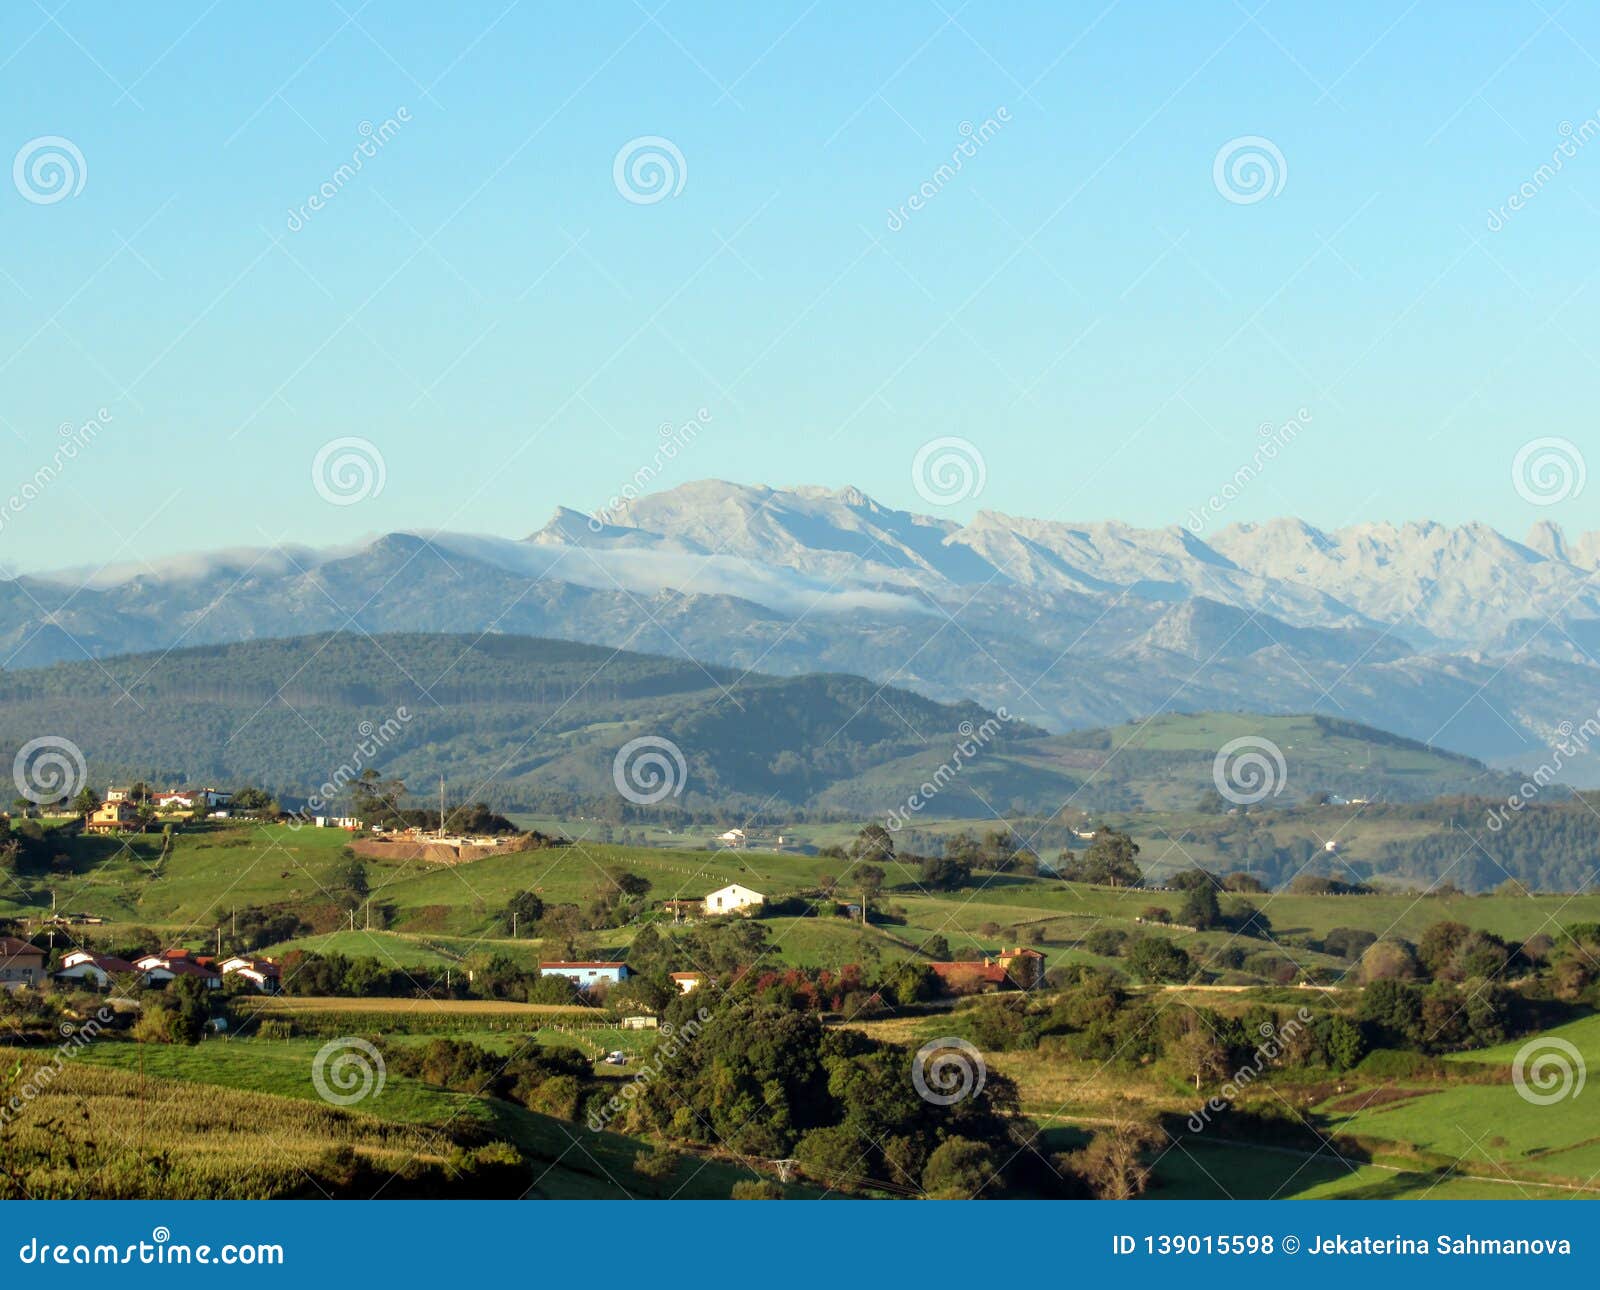 picos de europa mountain range along the coastal camino de santiago, northern st. james way, spain